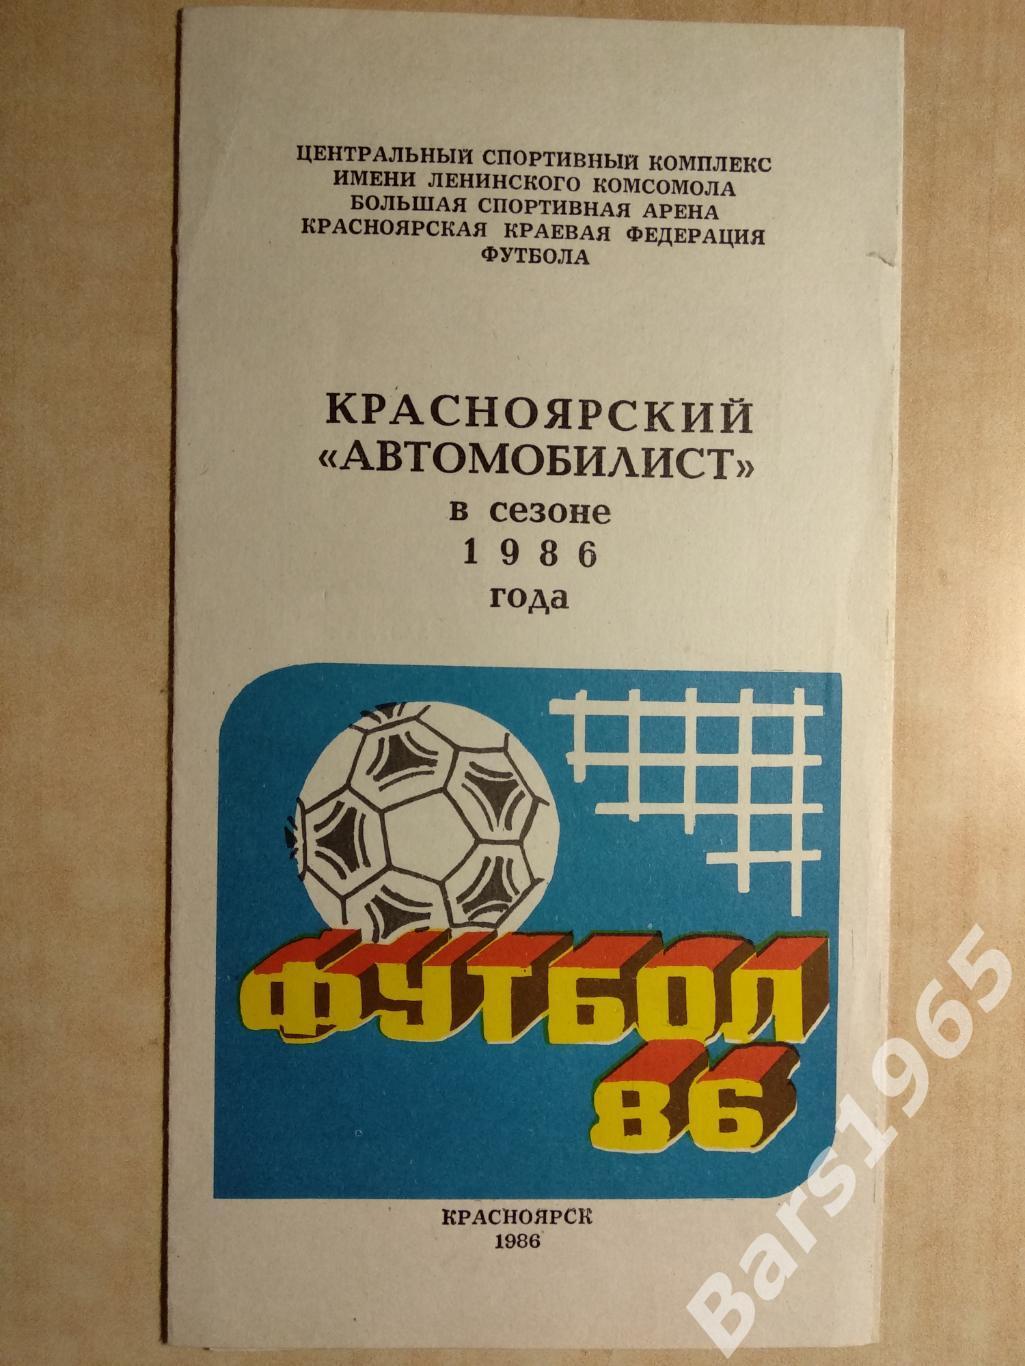 Автомобилист Красноярск 1986 Фотобуклет